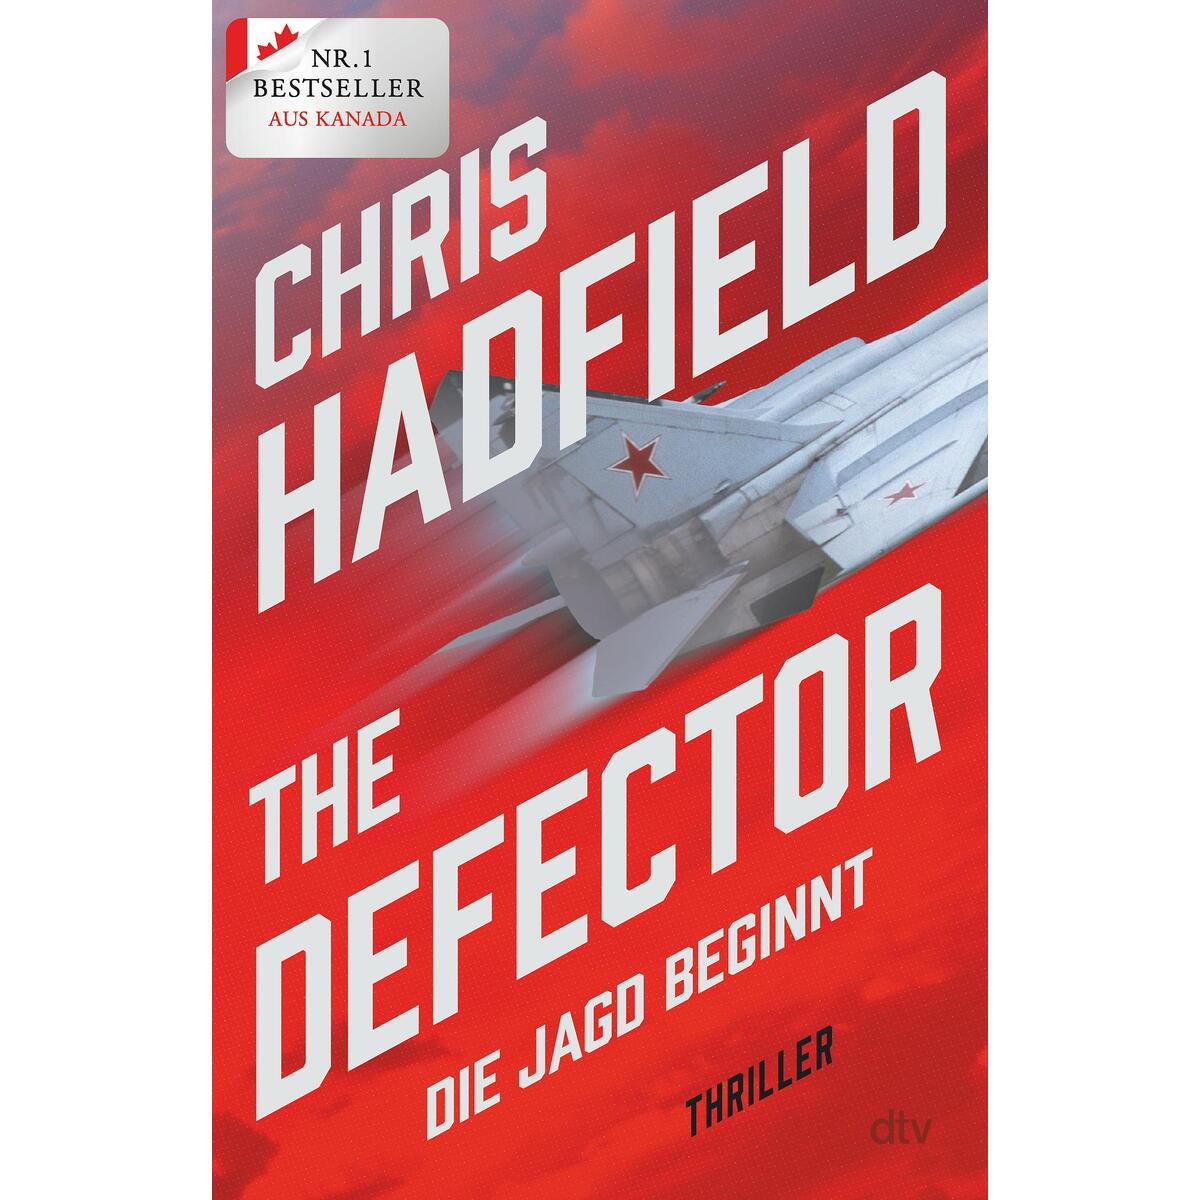 The Defector - Die Jagd beginnt von dtv Verlagsgesellschaft